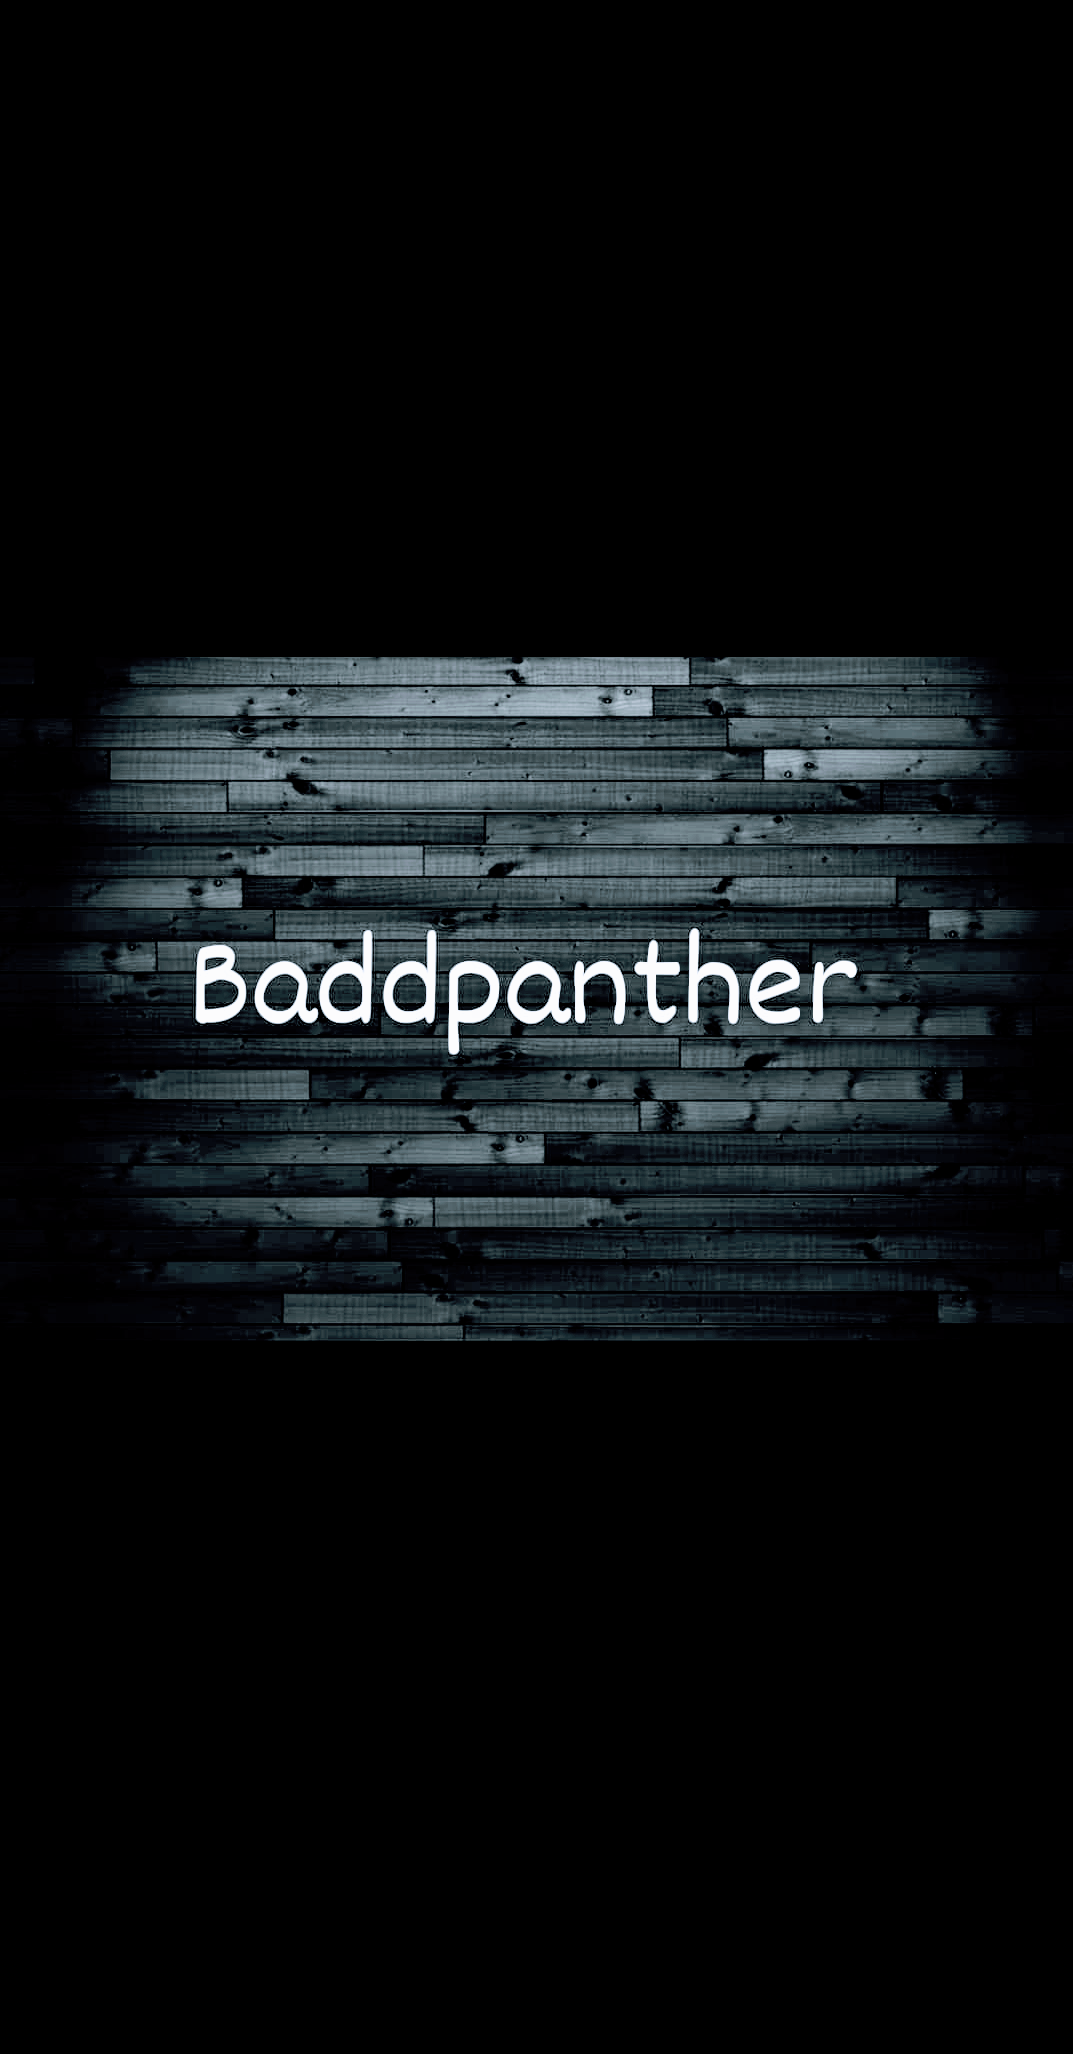 Baddpanther profile avatar